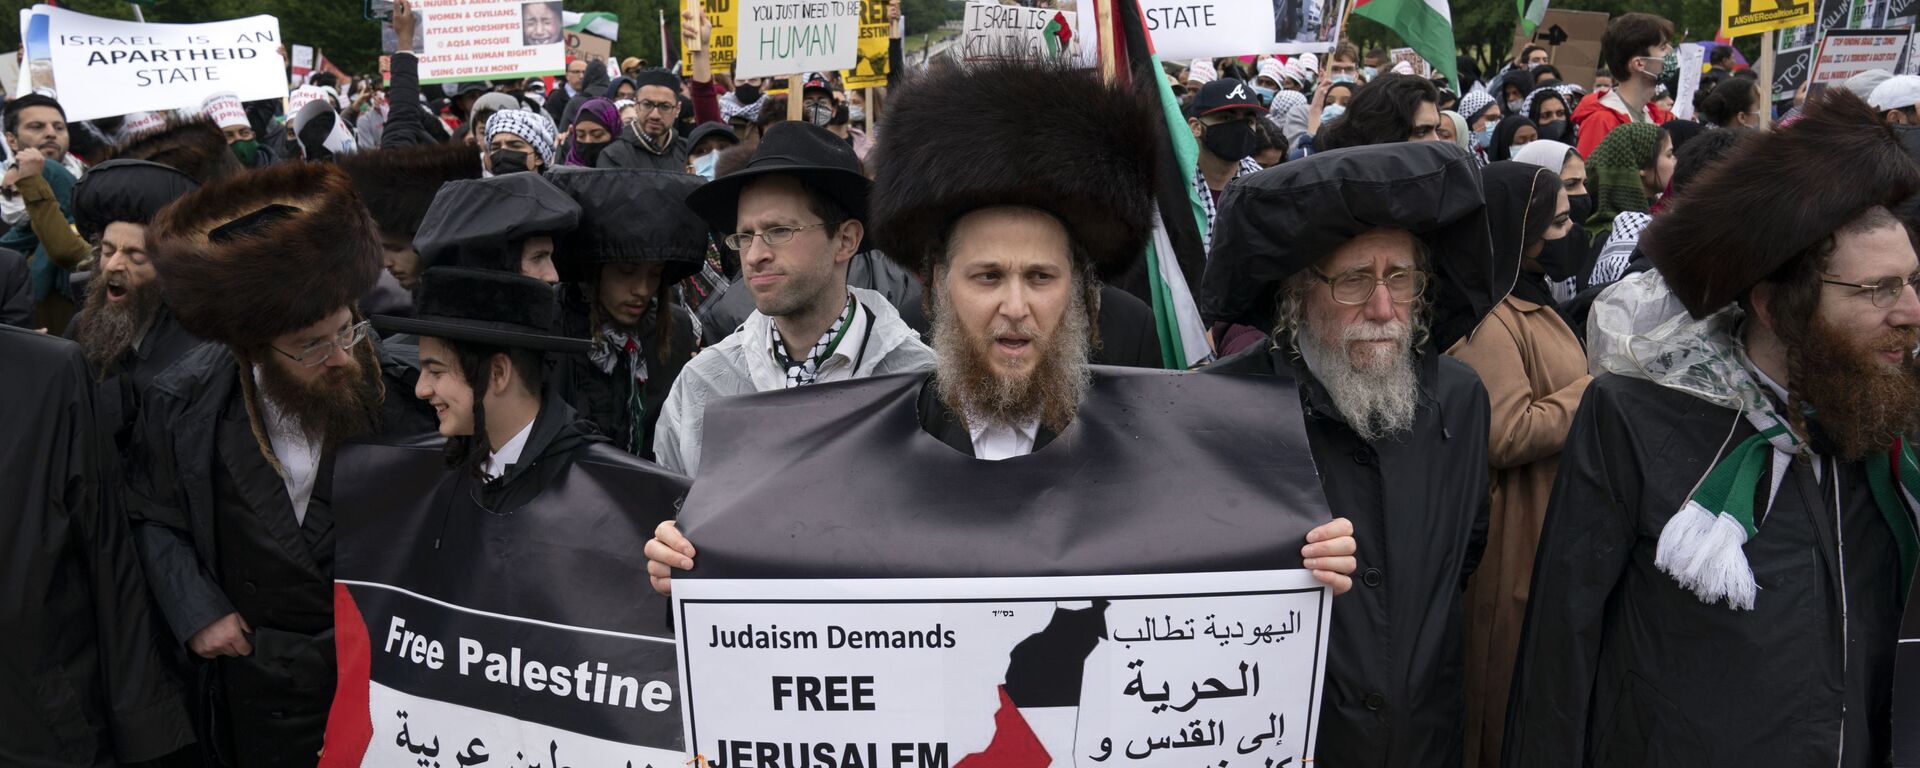 Membros de uma comunidade judaica juntam-se a apoiadores dos palestinos durante a manifestação da Marcha Nacional pela Palestina no Lincoln Memorial, em Washington, 29 de maio de 2021 - Sputnik Brasil, 1920, 31.08.2021